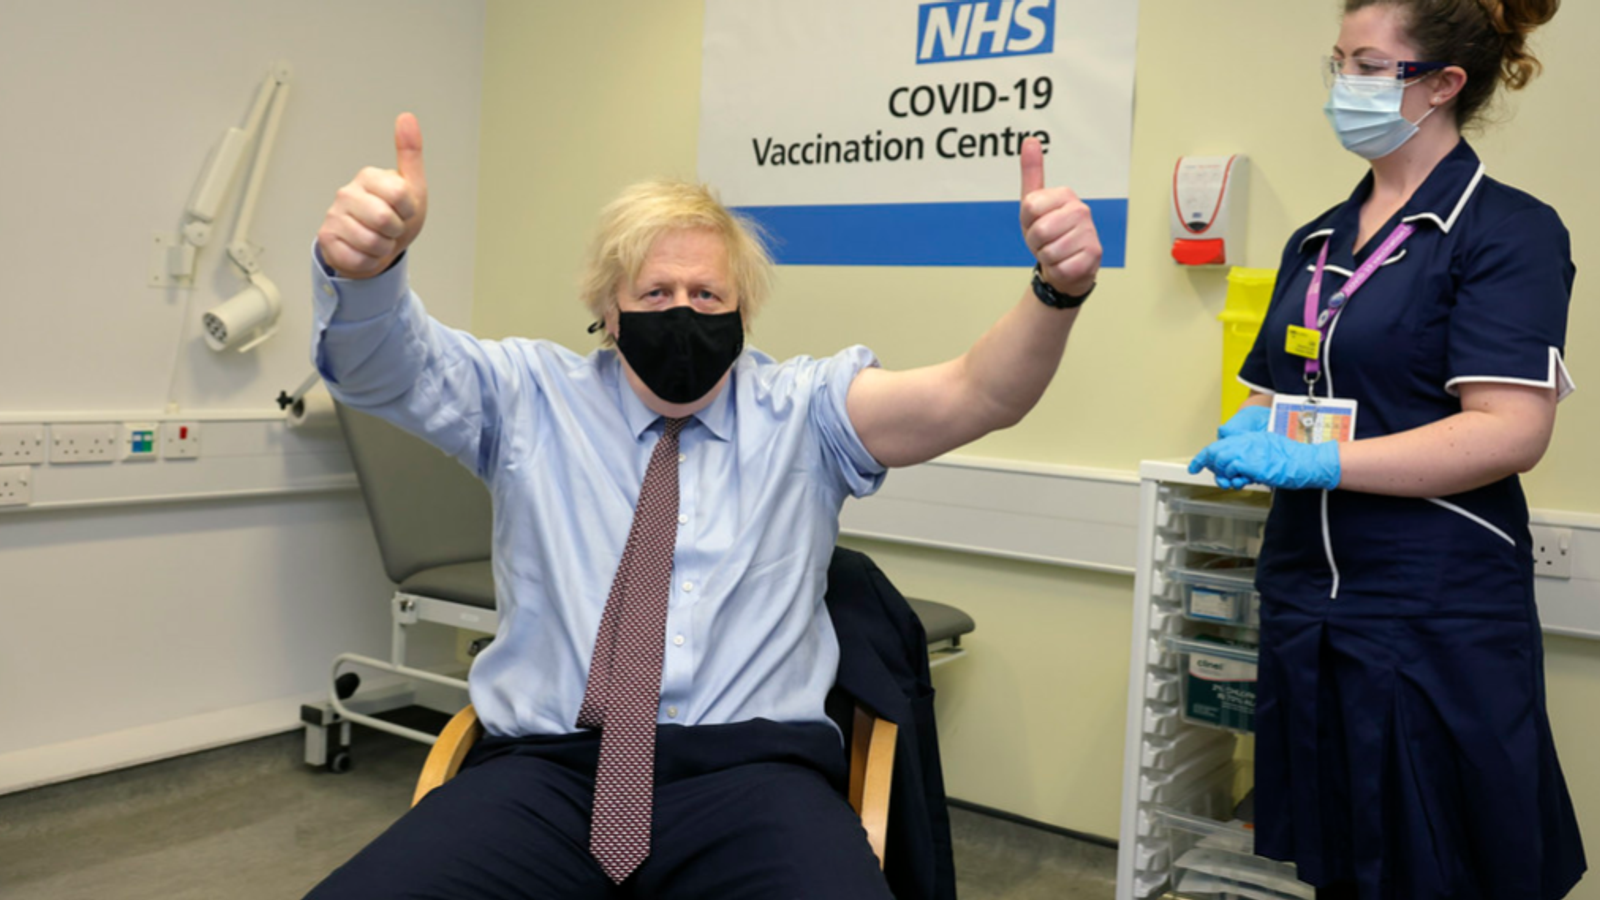 COVID-19: Boris Johnson receives first dose of Oxford-AstraZeneca vaccine